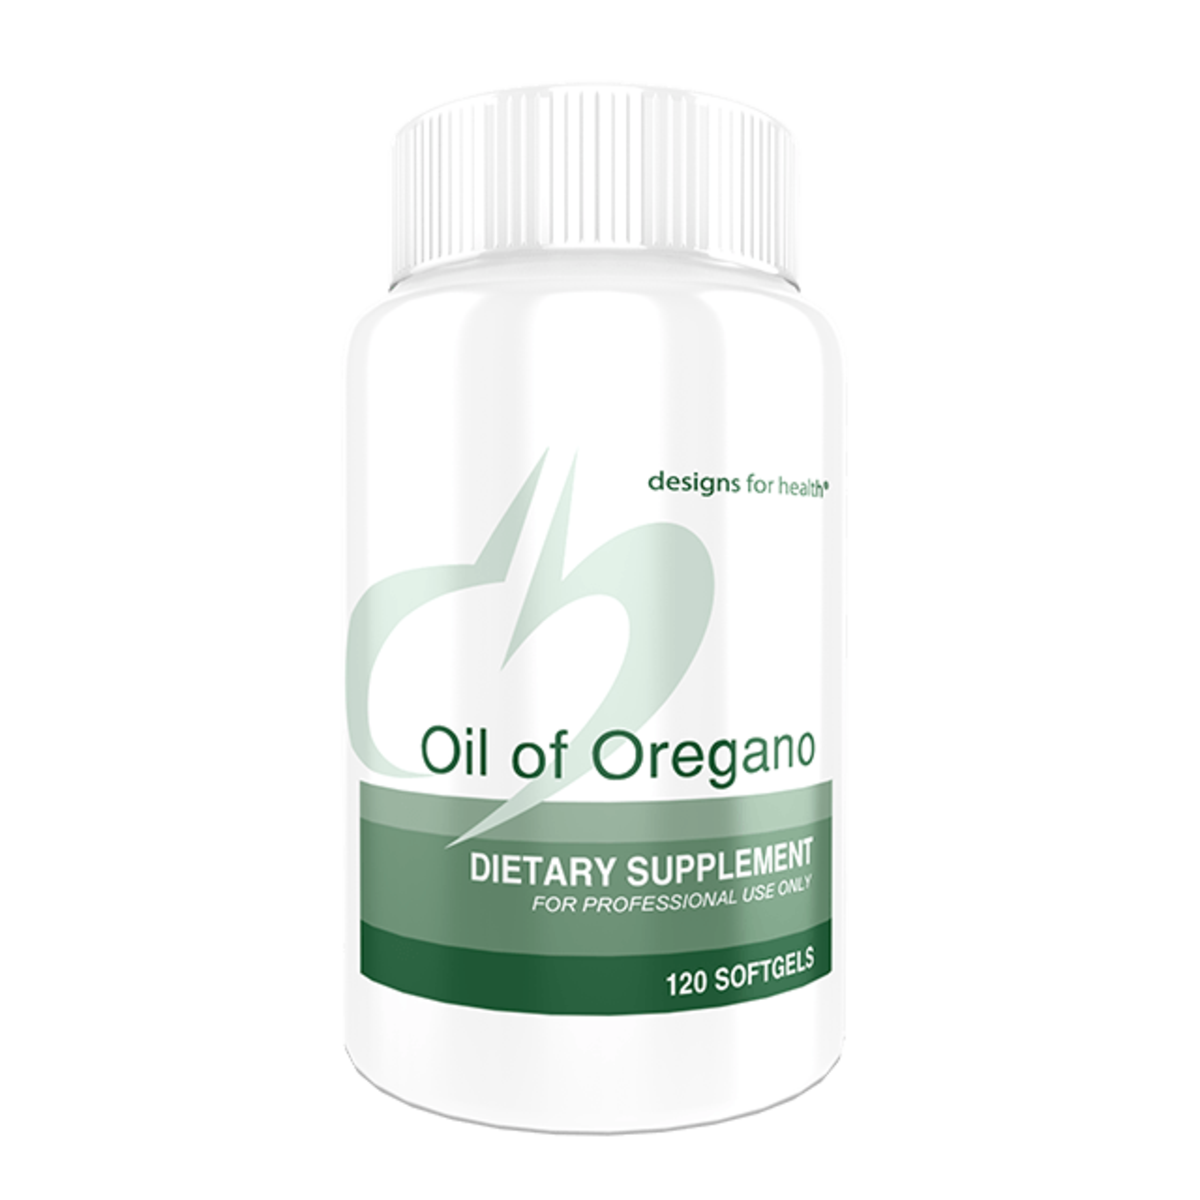 Oil of Oregano (120 softgels) by Designs for Health Institute for Progressive Medicine